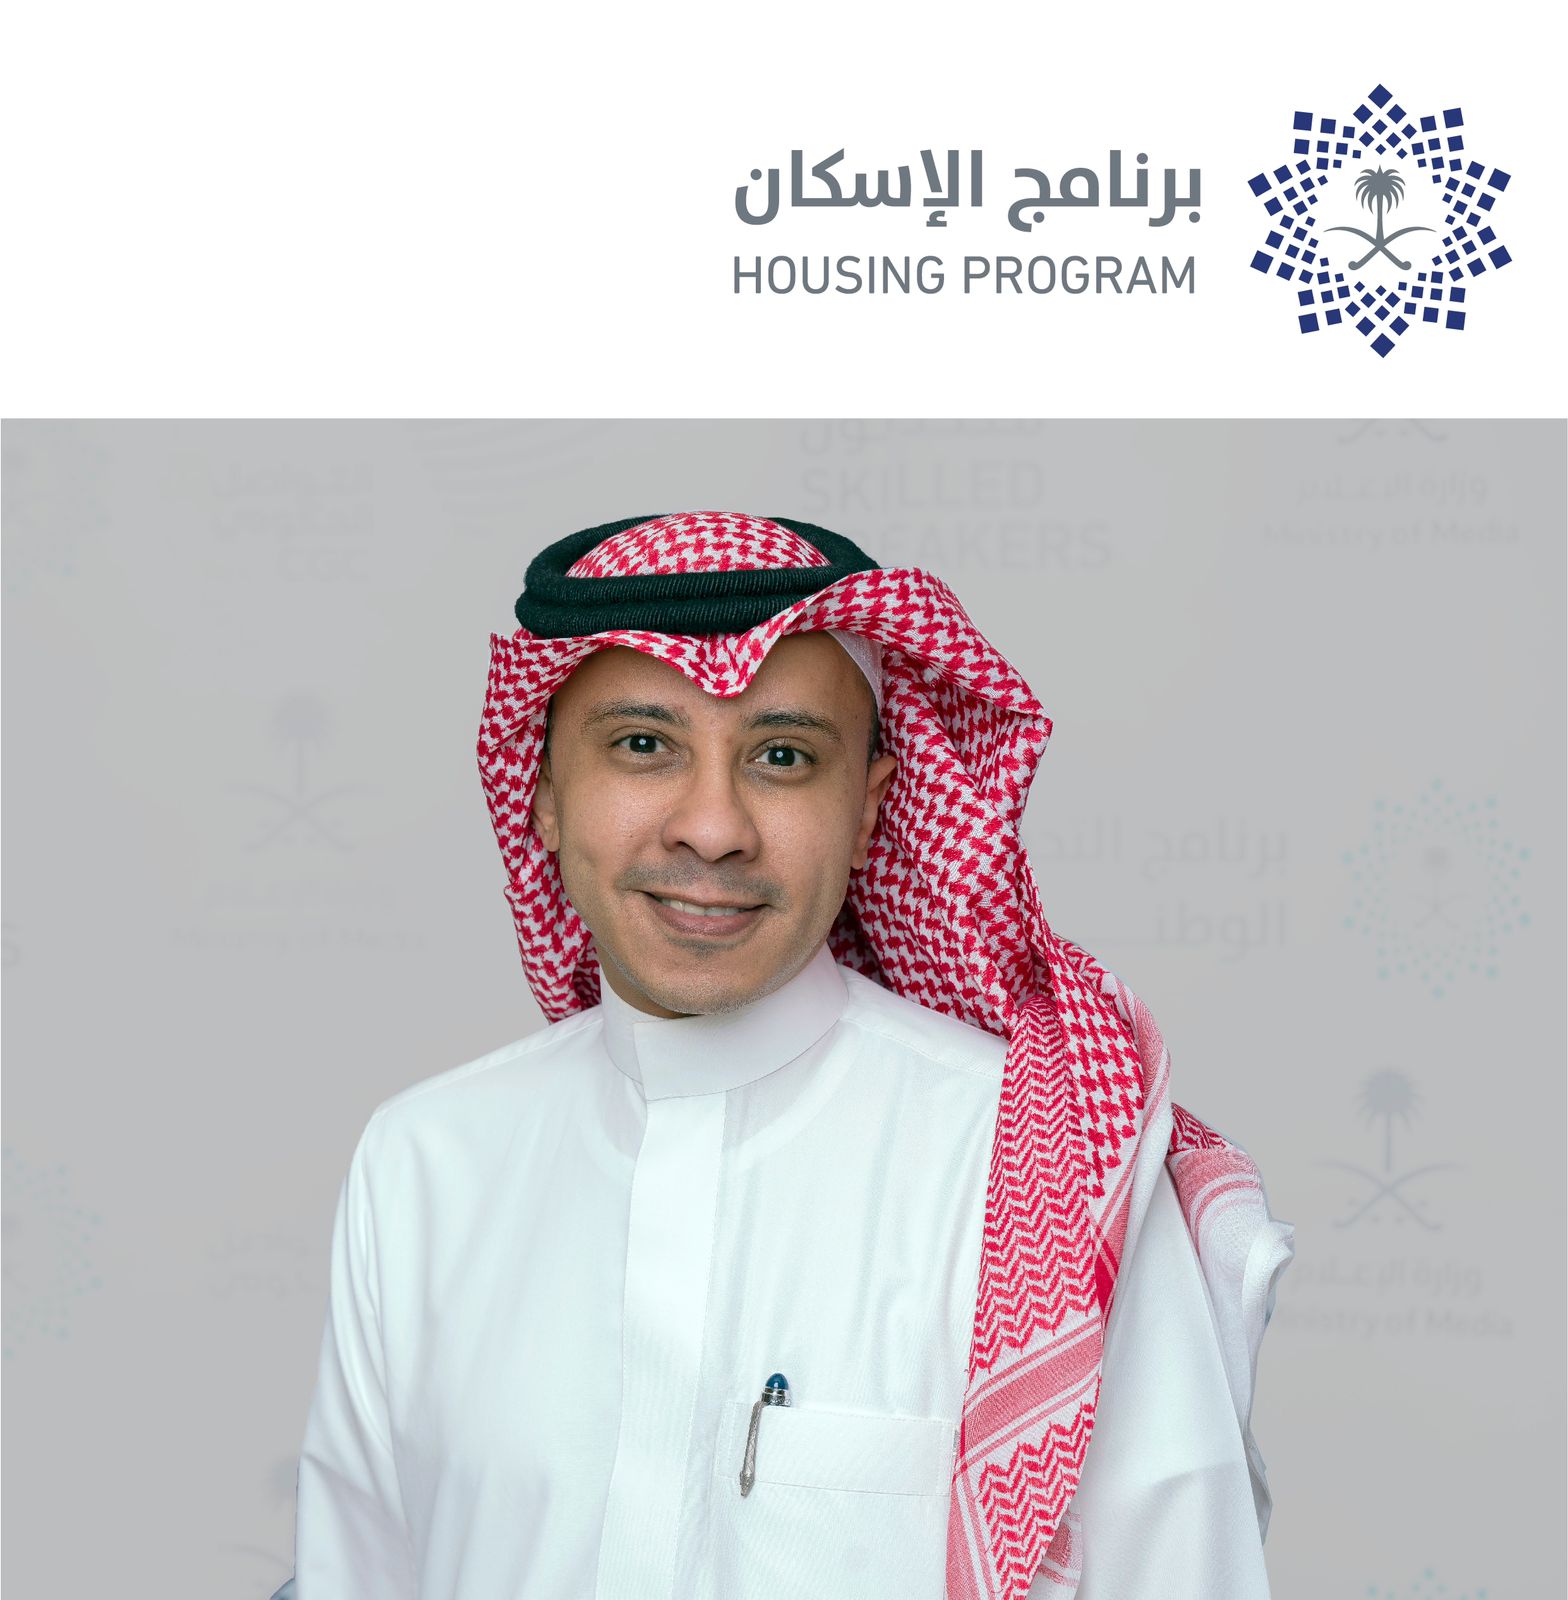 القحطاني متحدثًا رسميًا ومديرًا عامًا للتواصل في برنامج الإسكان